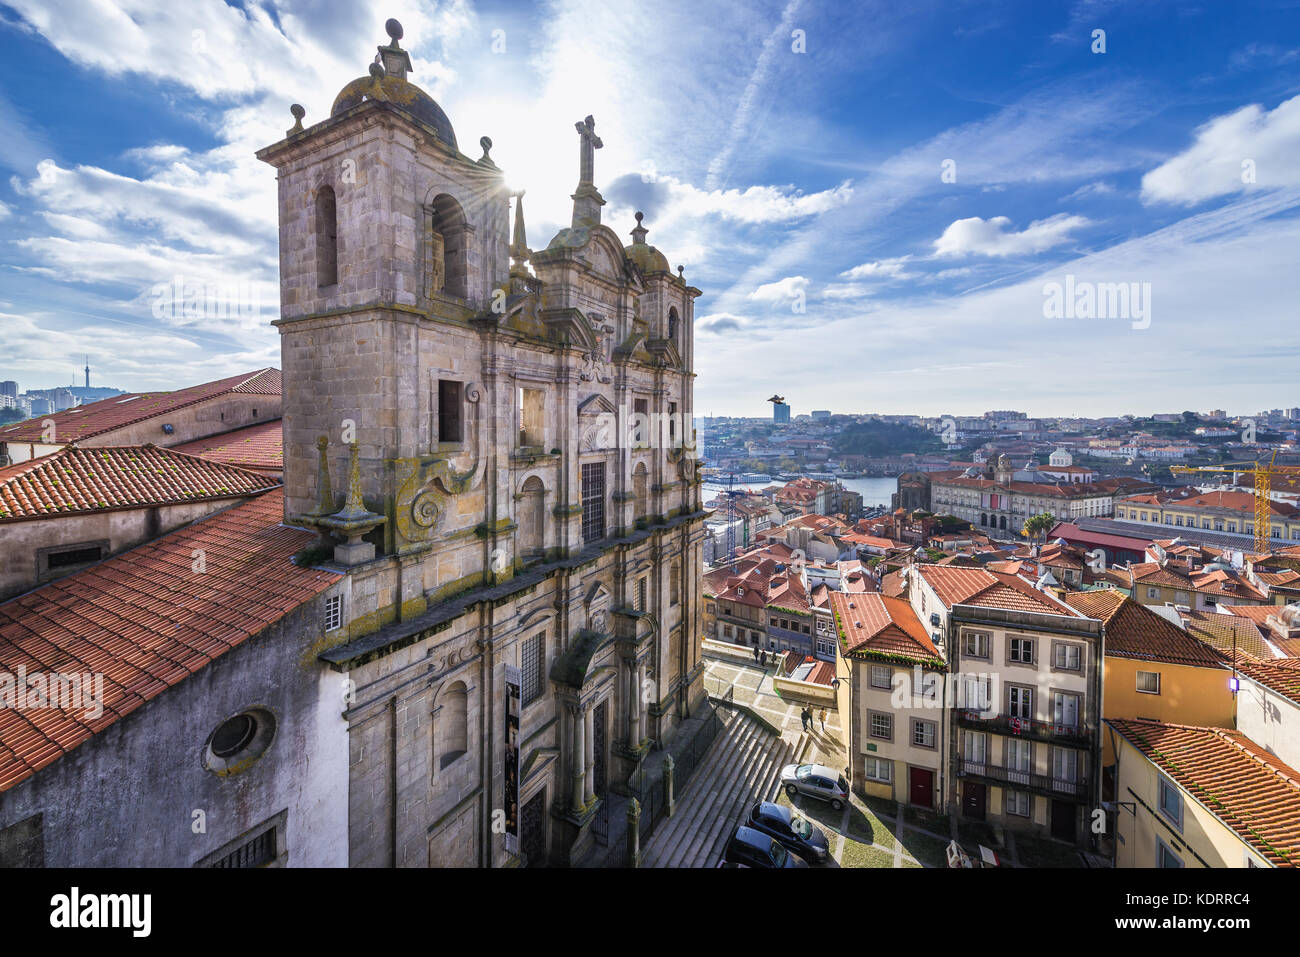 Igreja dos Grilos chiesa e convento (letteralmente il Cricket's Chiesa) nella città di Porto sulla Penisola Iberica, la seconda più grande città in Portogallo Foto Stock